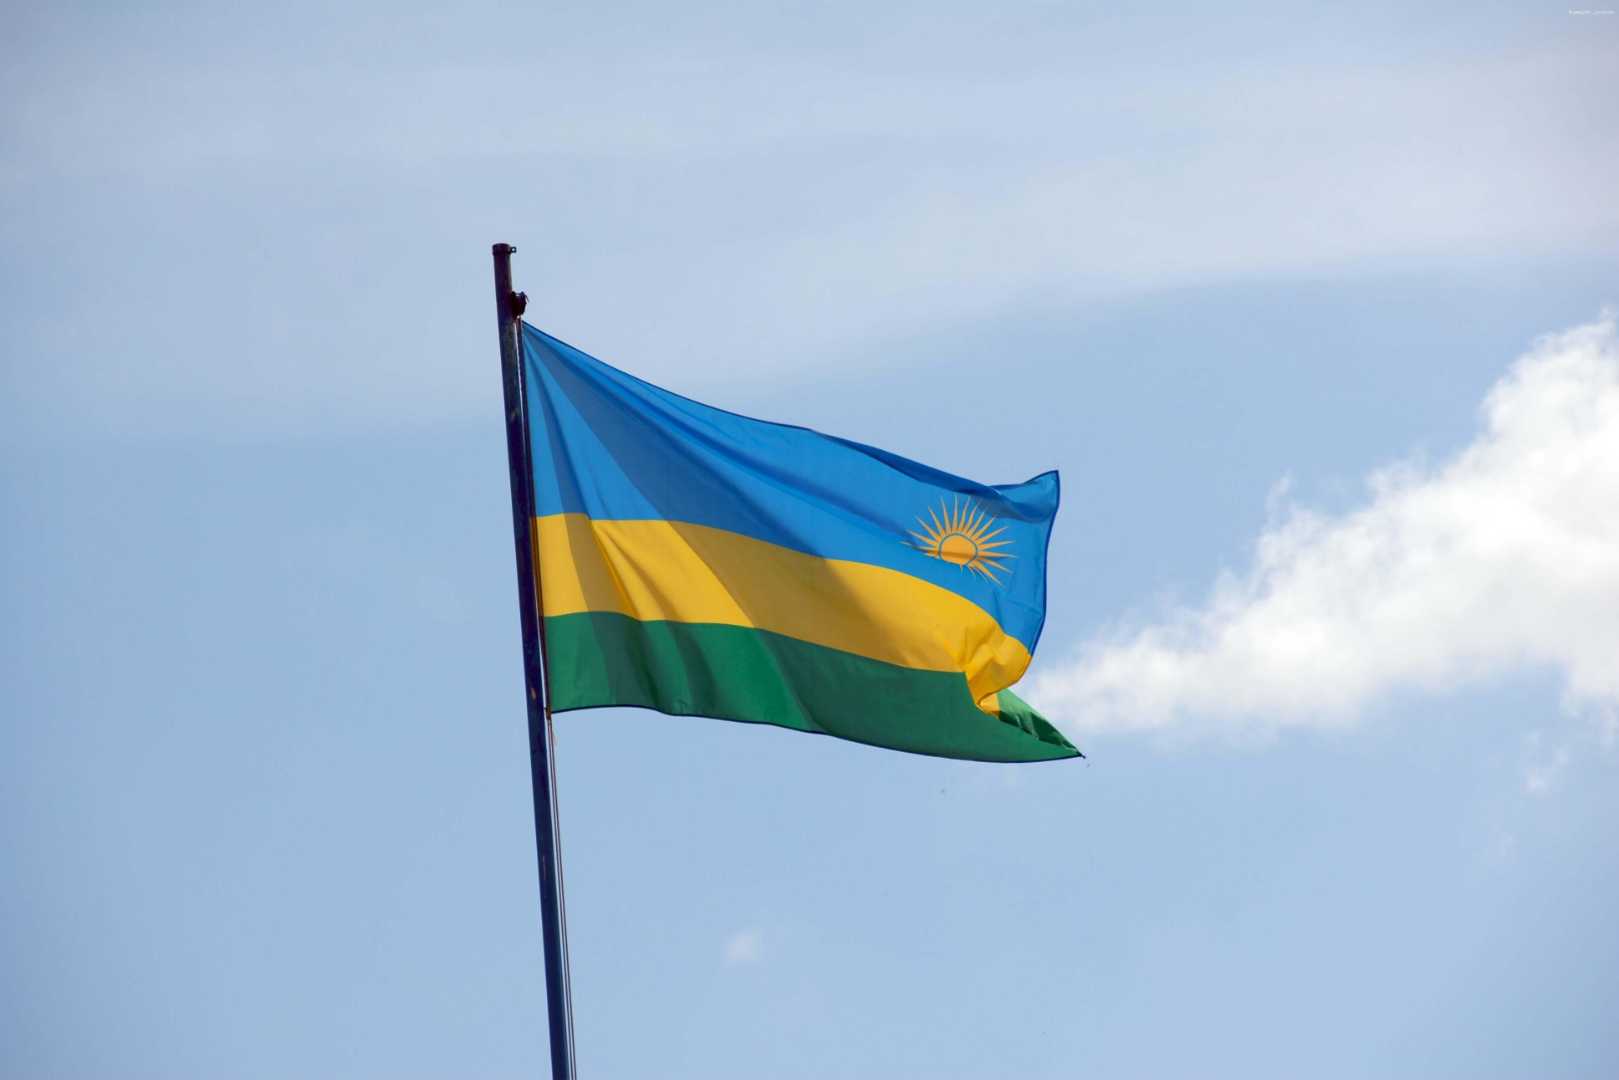 Руанда отозвала подпись под коммюнике конференции в Бюргенштоке